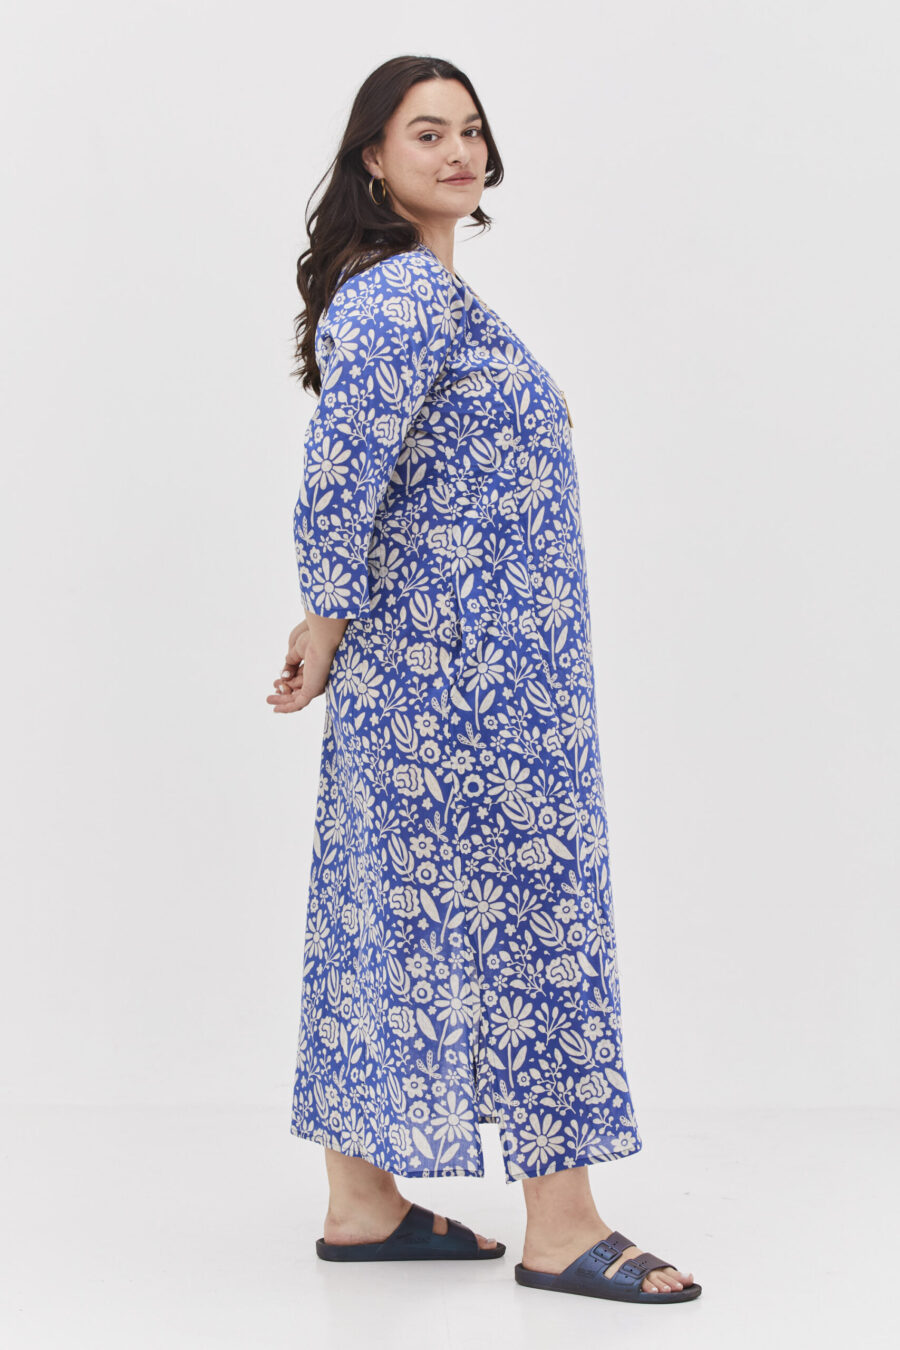 גלביה לנשים | גלבייה בעיצוב ייחודי - הדפס כחול רומנטי, שמלה בצבע כחול בהיר בשילוב פרינט פרחים לבנים